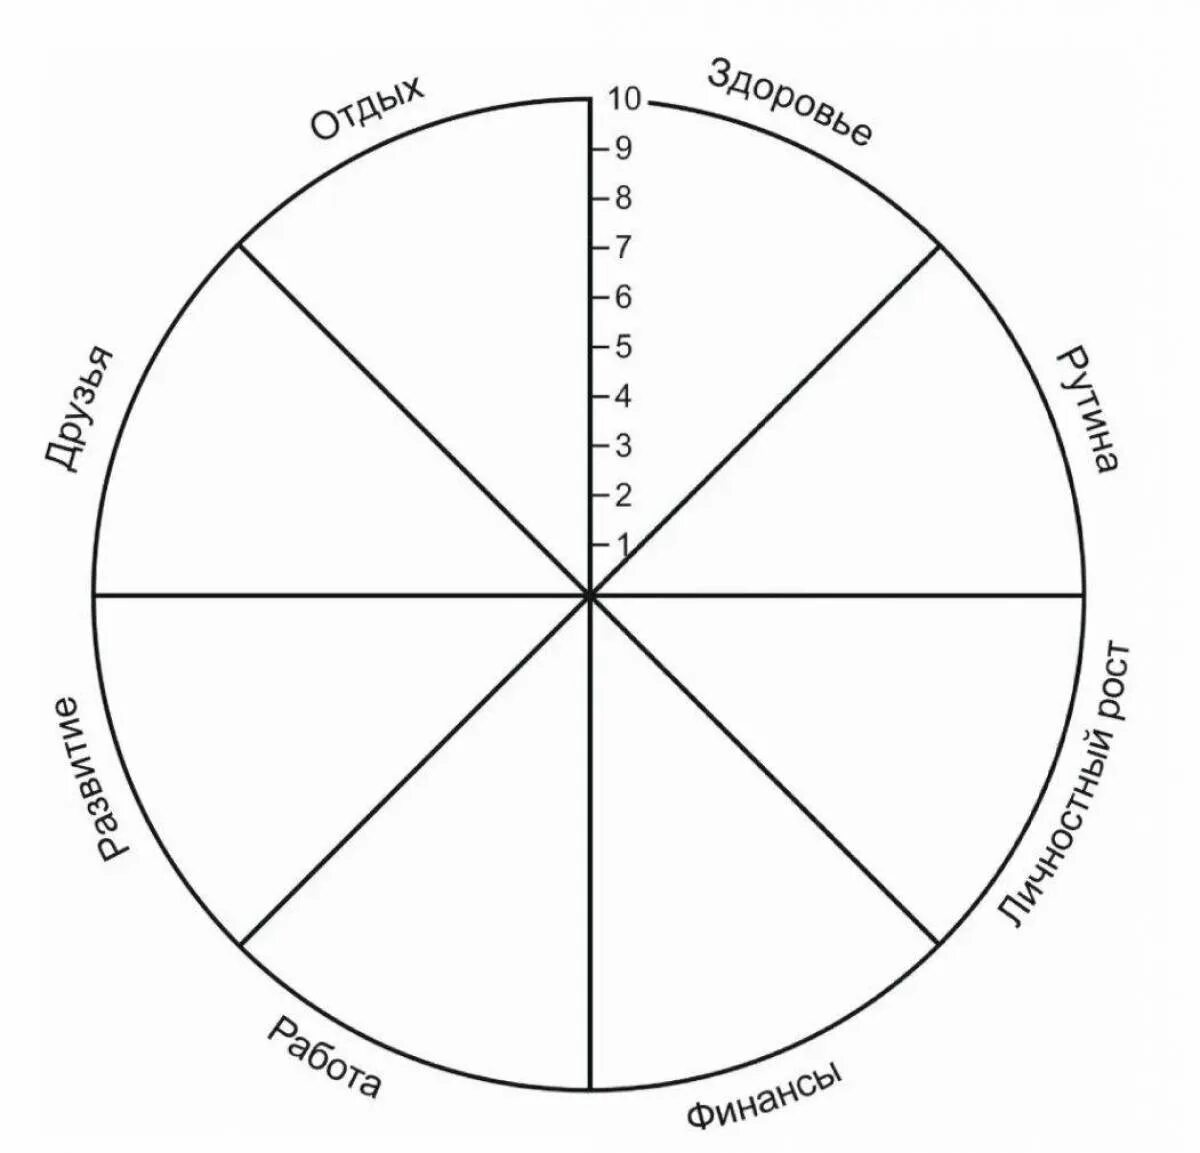 Колесо круг или окружность. Колесо жизненного баланса 8 сфер. Схема колеса жизненного баланса. Коле/о жизненного баланса. Колесо жизни, баланс жизни (8 основных сфер).